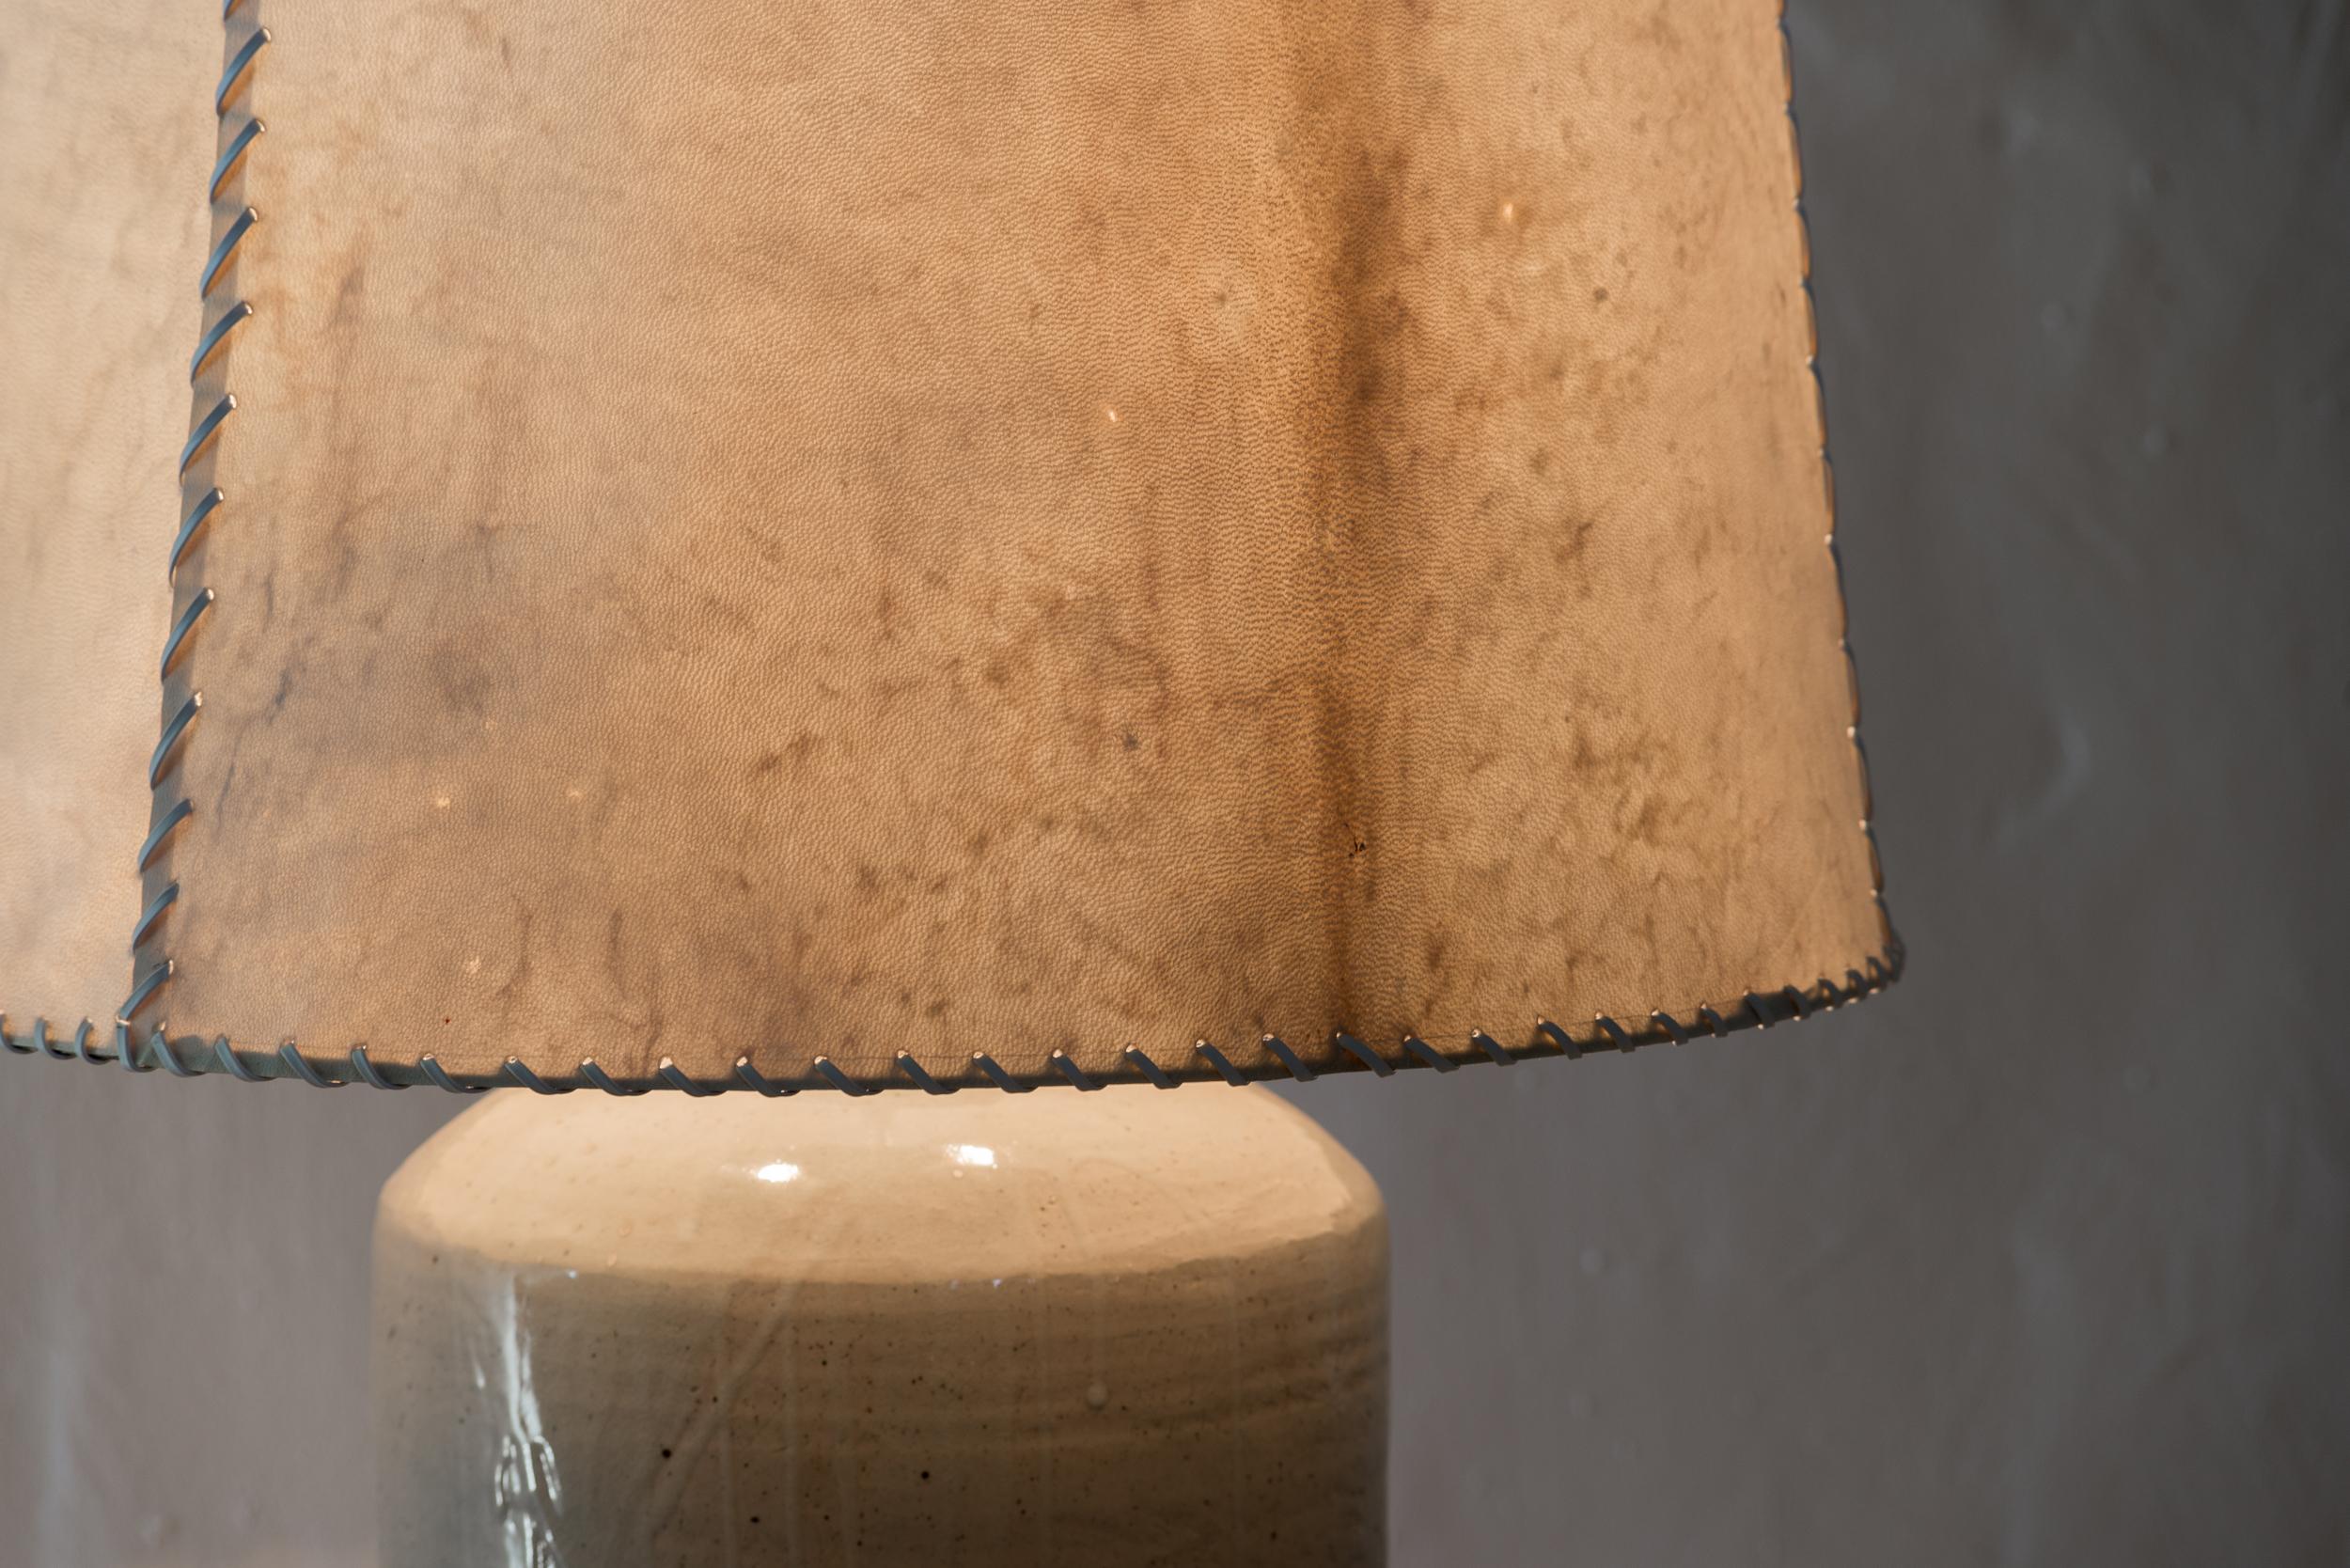 Luis Barragan (1902-1988)

Ceramic table lamp
From Casa del Pedregal (Casa Prieto López)
Manufactured by Hugo X. Velázquez
México, 1952
Ceramic, parchment leather

Measurements:
Total height 103 cm
Vase height 58 cm
Diameter 46